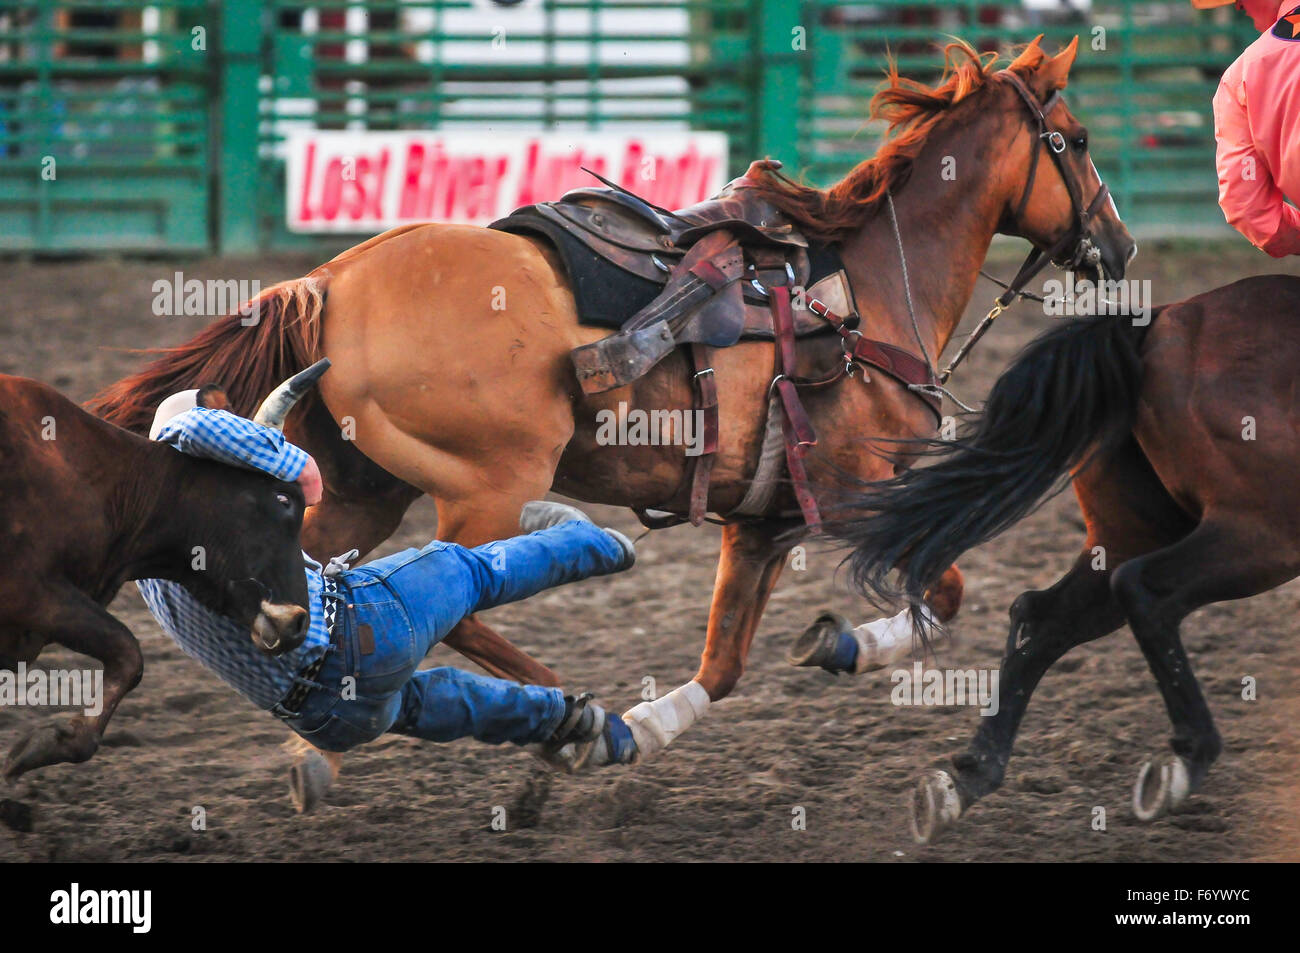 Wettbewerb beim Rodeo in Idaho, Hexe Cowboy ist der schnellste in den Fang einer Kuh aus einem Reitpferd. Stockfoto